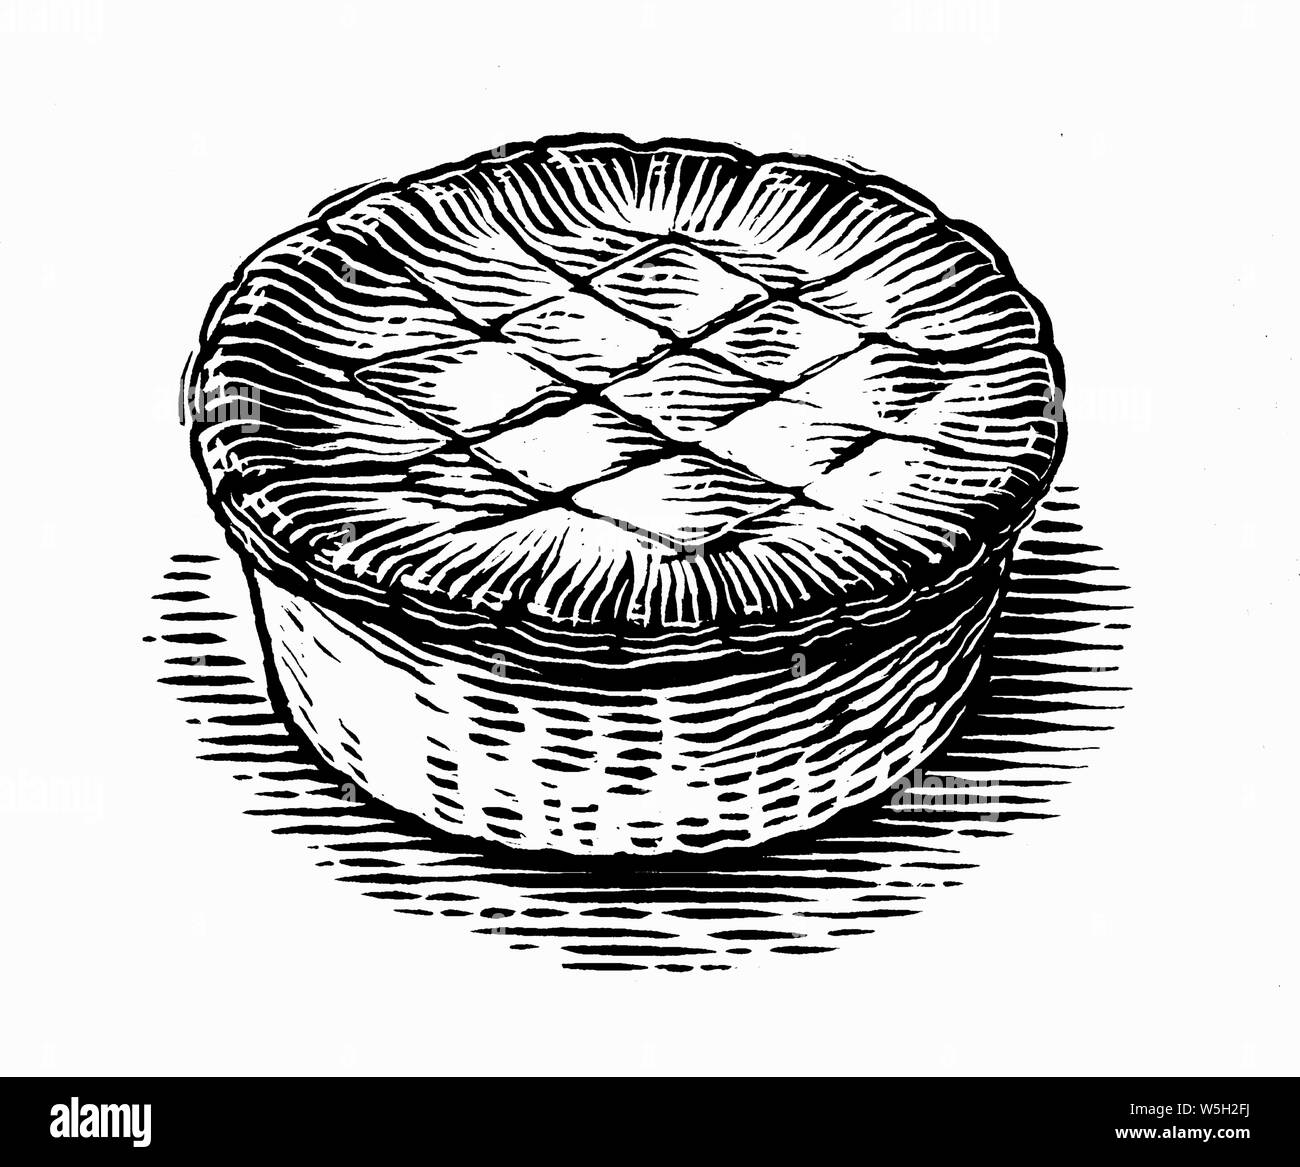 Noir et blanc de la gravure scraperboard pâtisserie tarte Banque D'Images